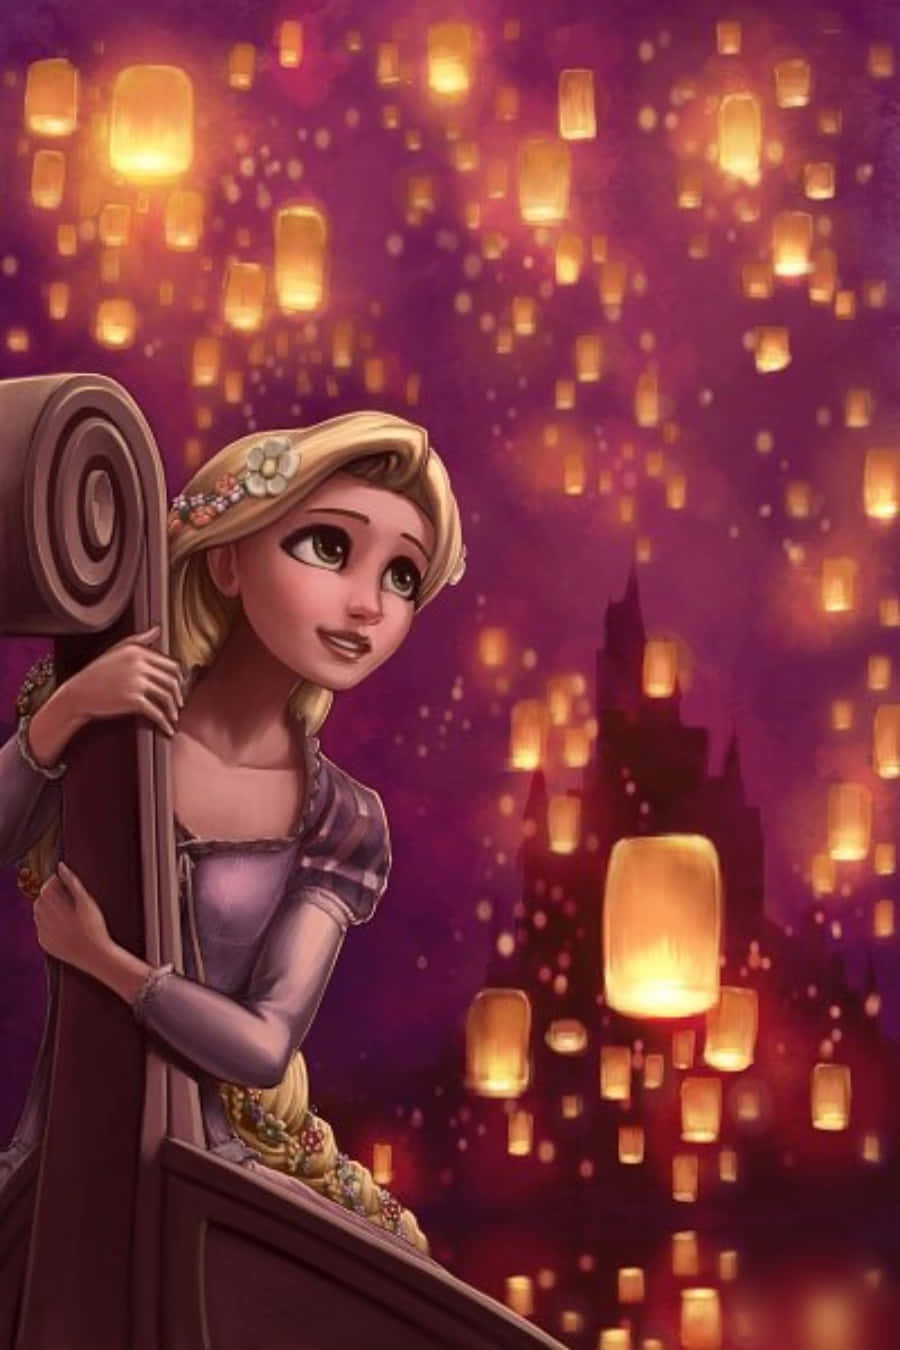 Rapunzelguarda Fuori Dalla Sua Torre Con Uno Sguardo Sognante.